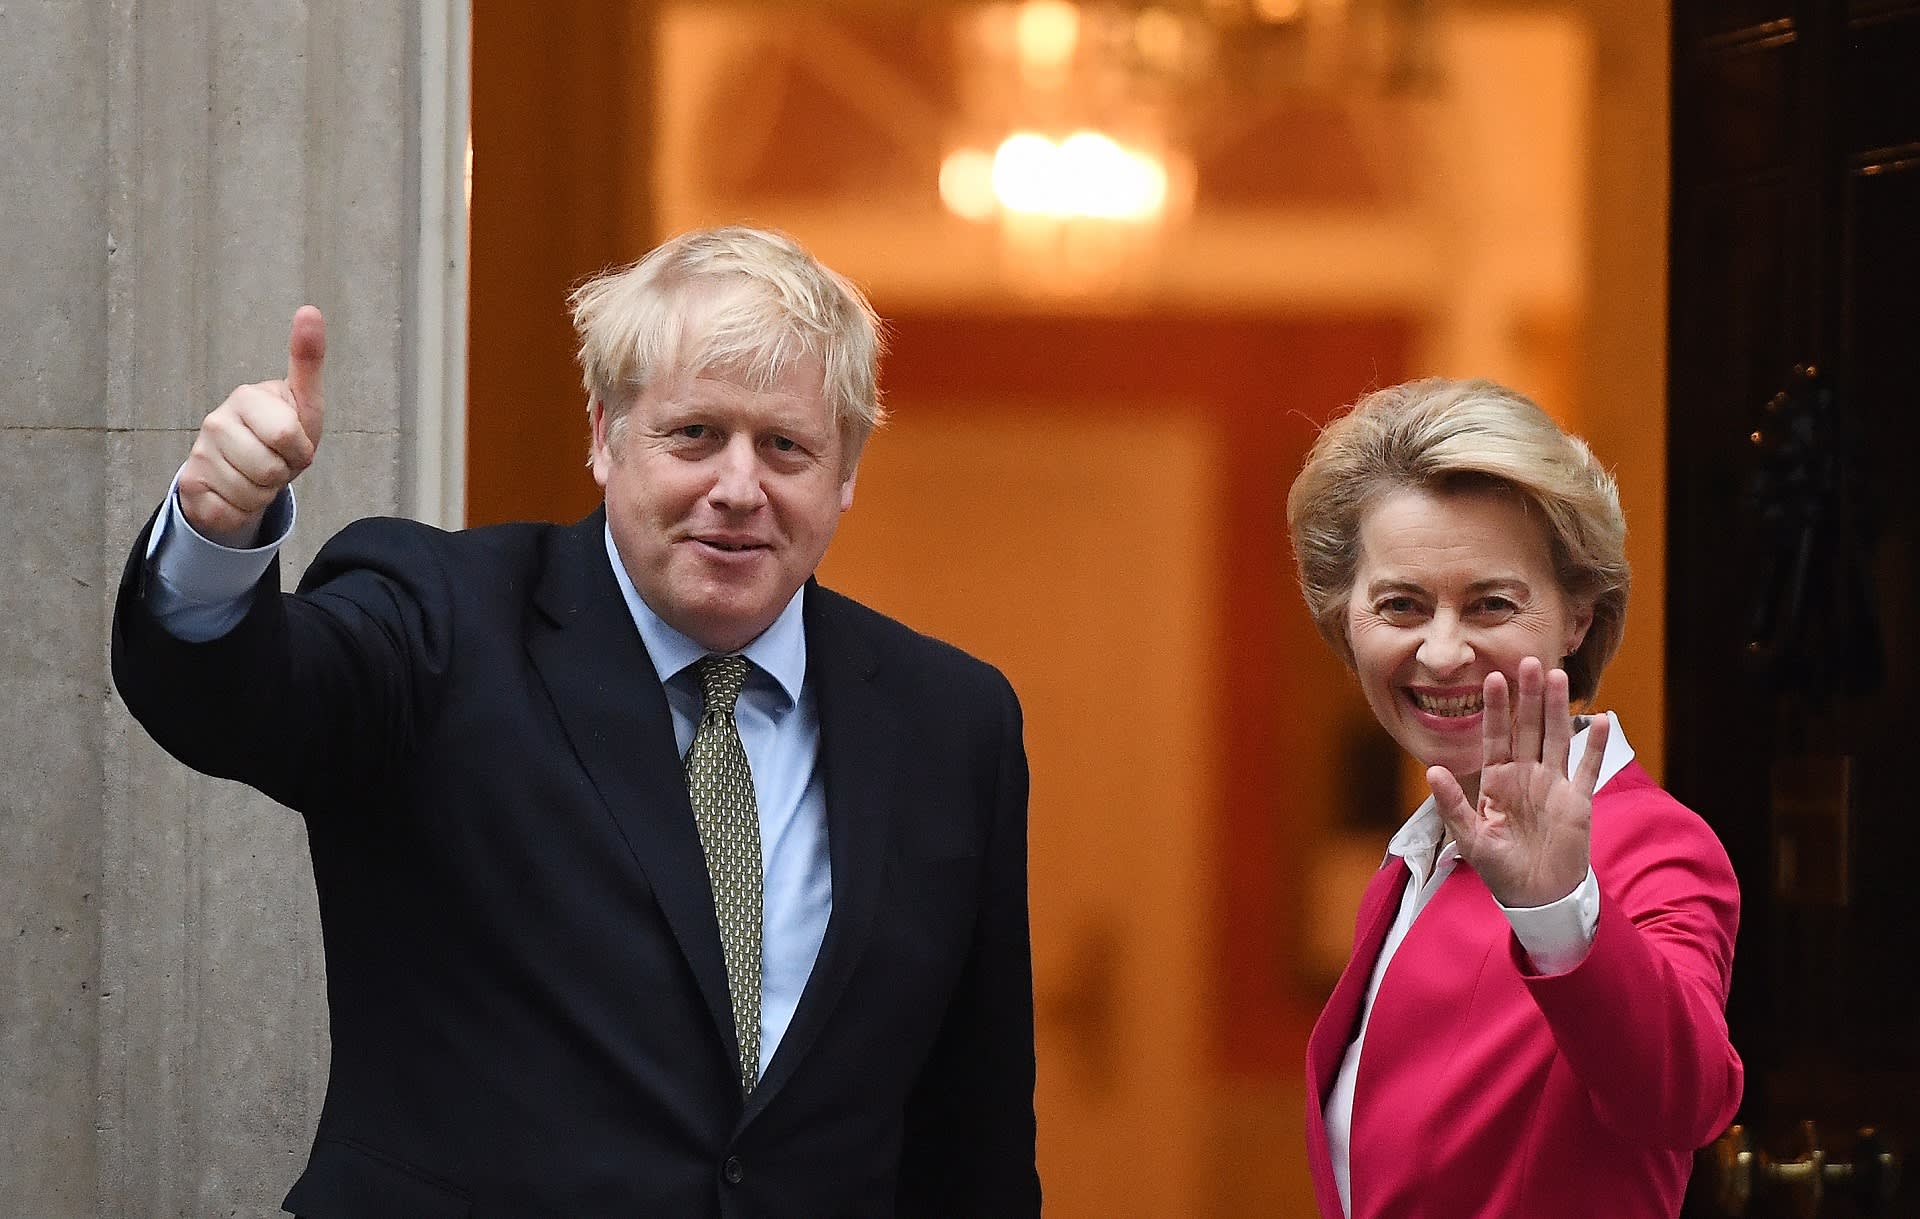 Britannian pääministeri Boris Johnson vastaanotti EU:n komission puheenjohtajan Ursula von der Leyenin.